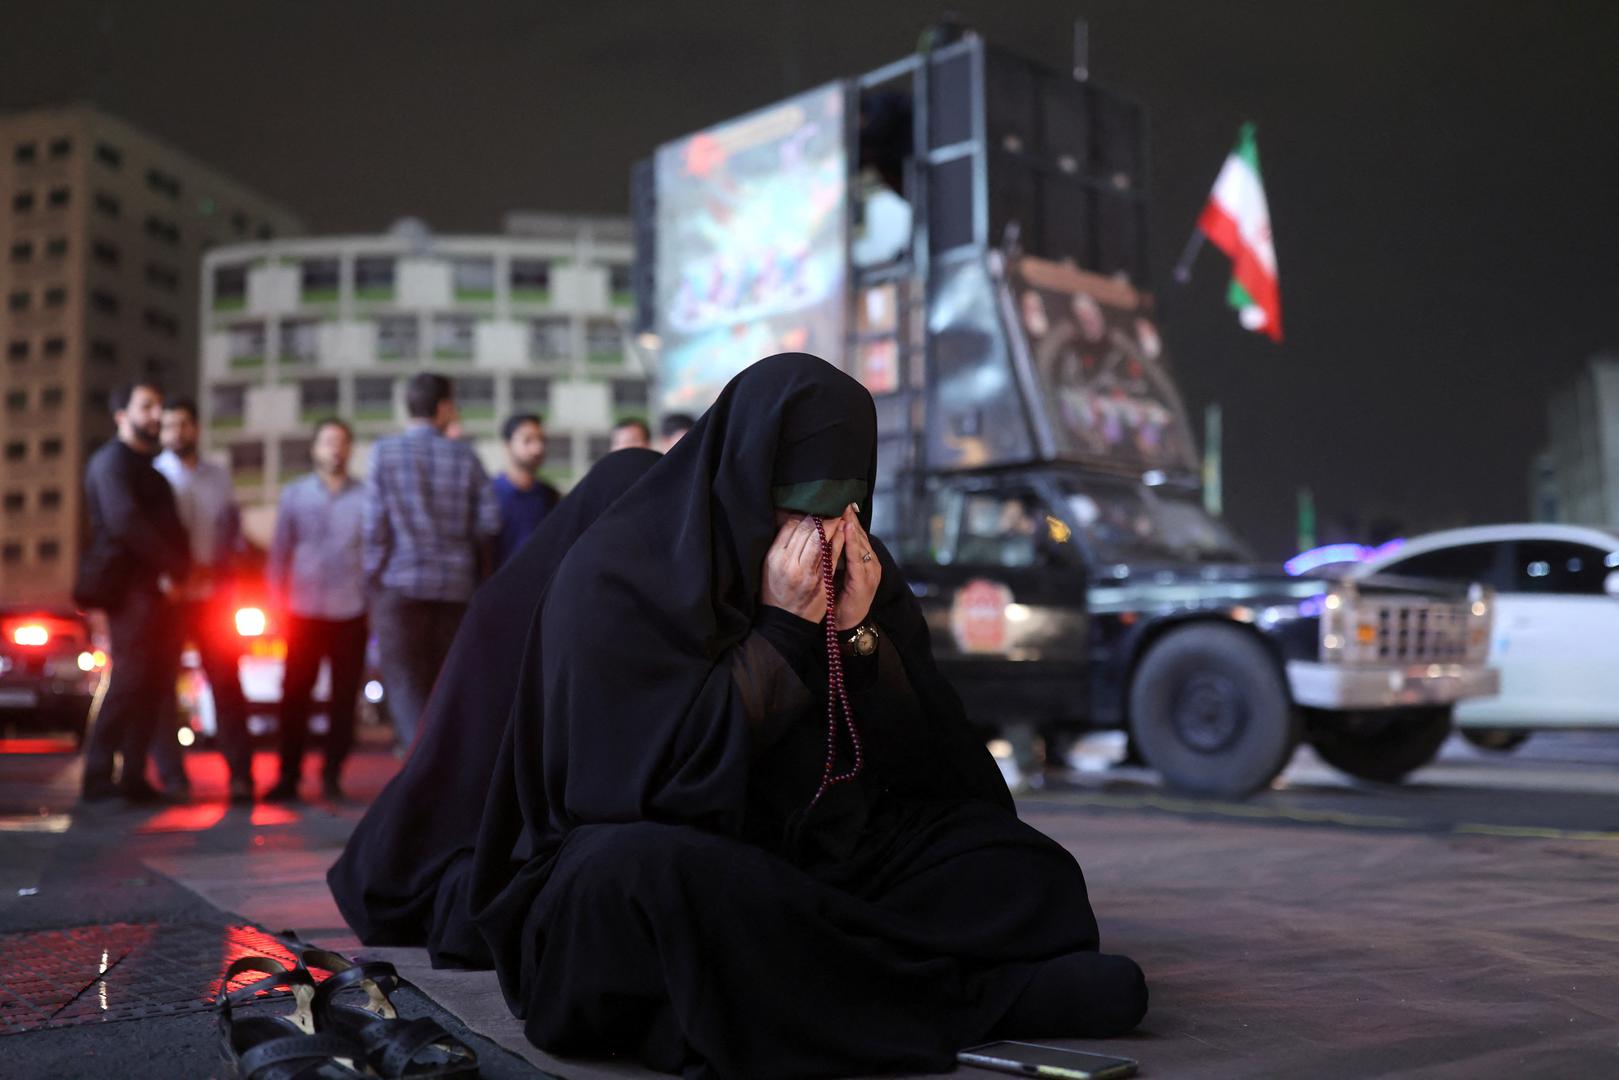 Državni mediji pozvali su Irance da se mole za sretan povratak predsjednika i ostalih ljudi koji su bili u helikopteru. 